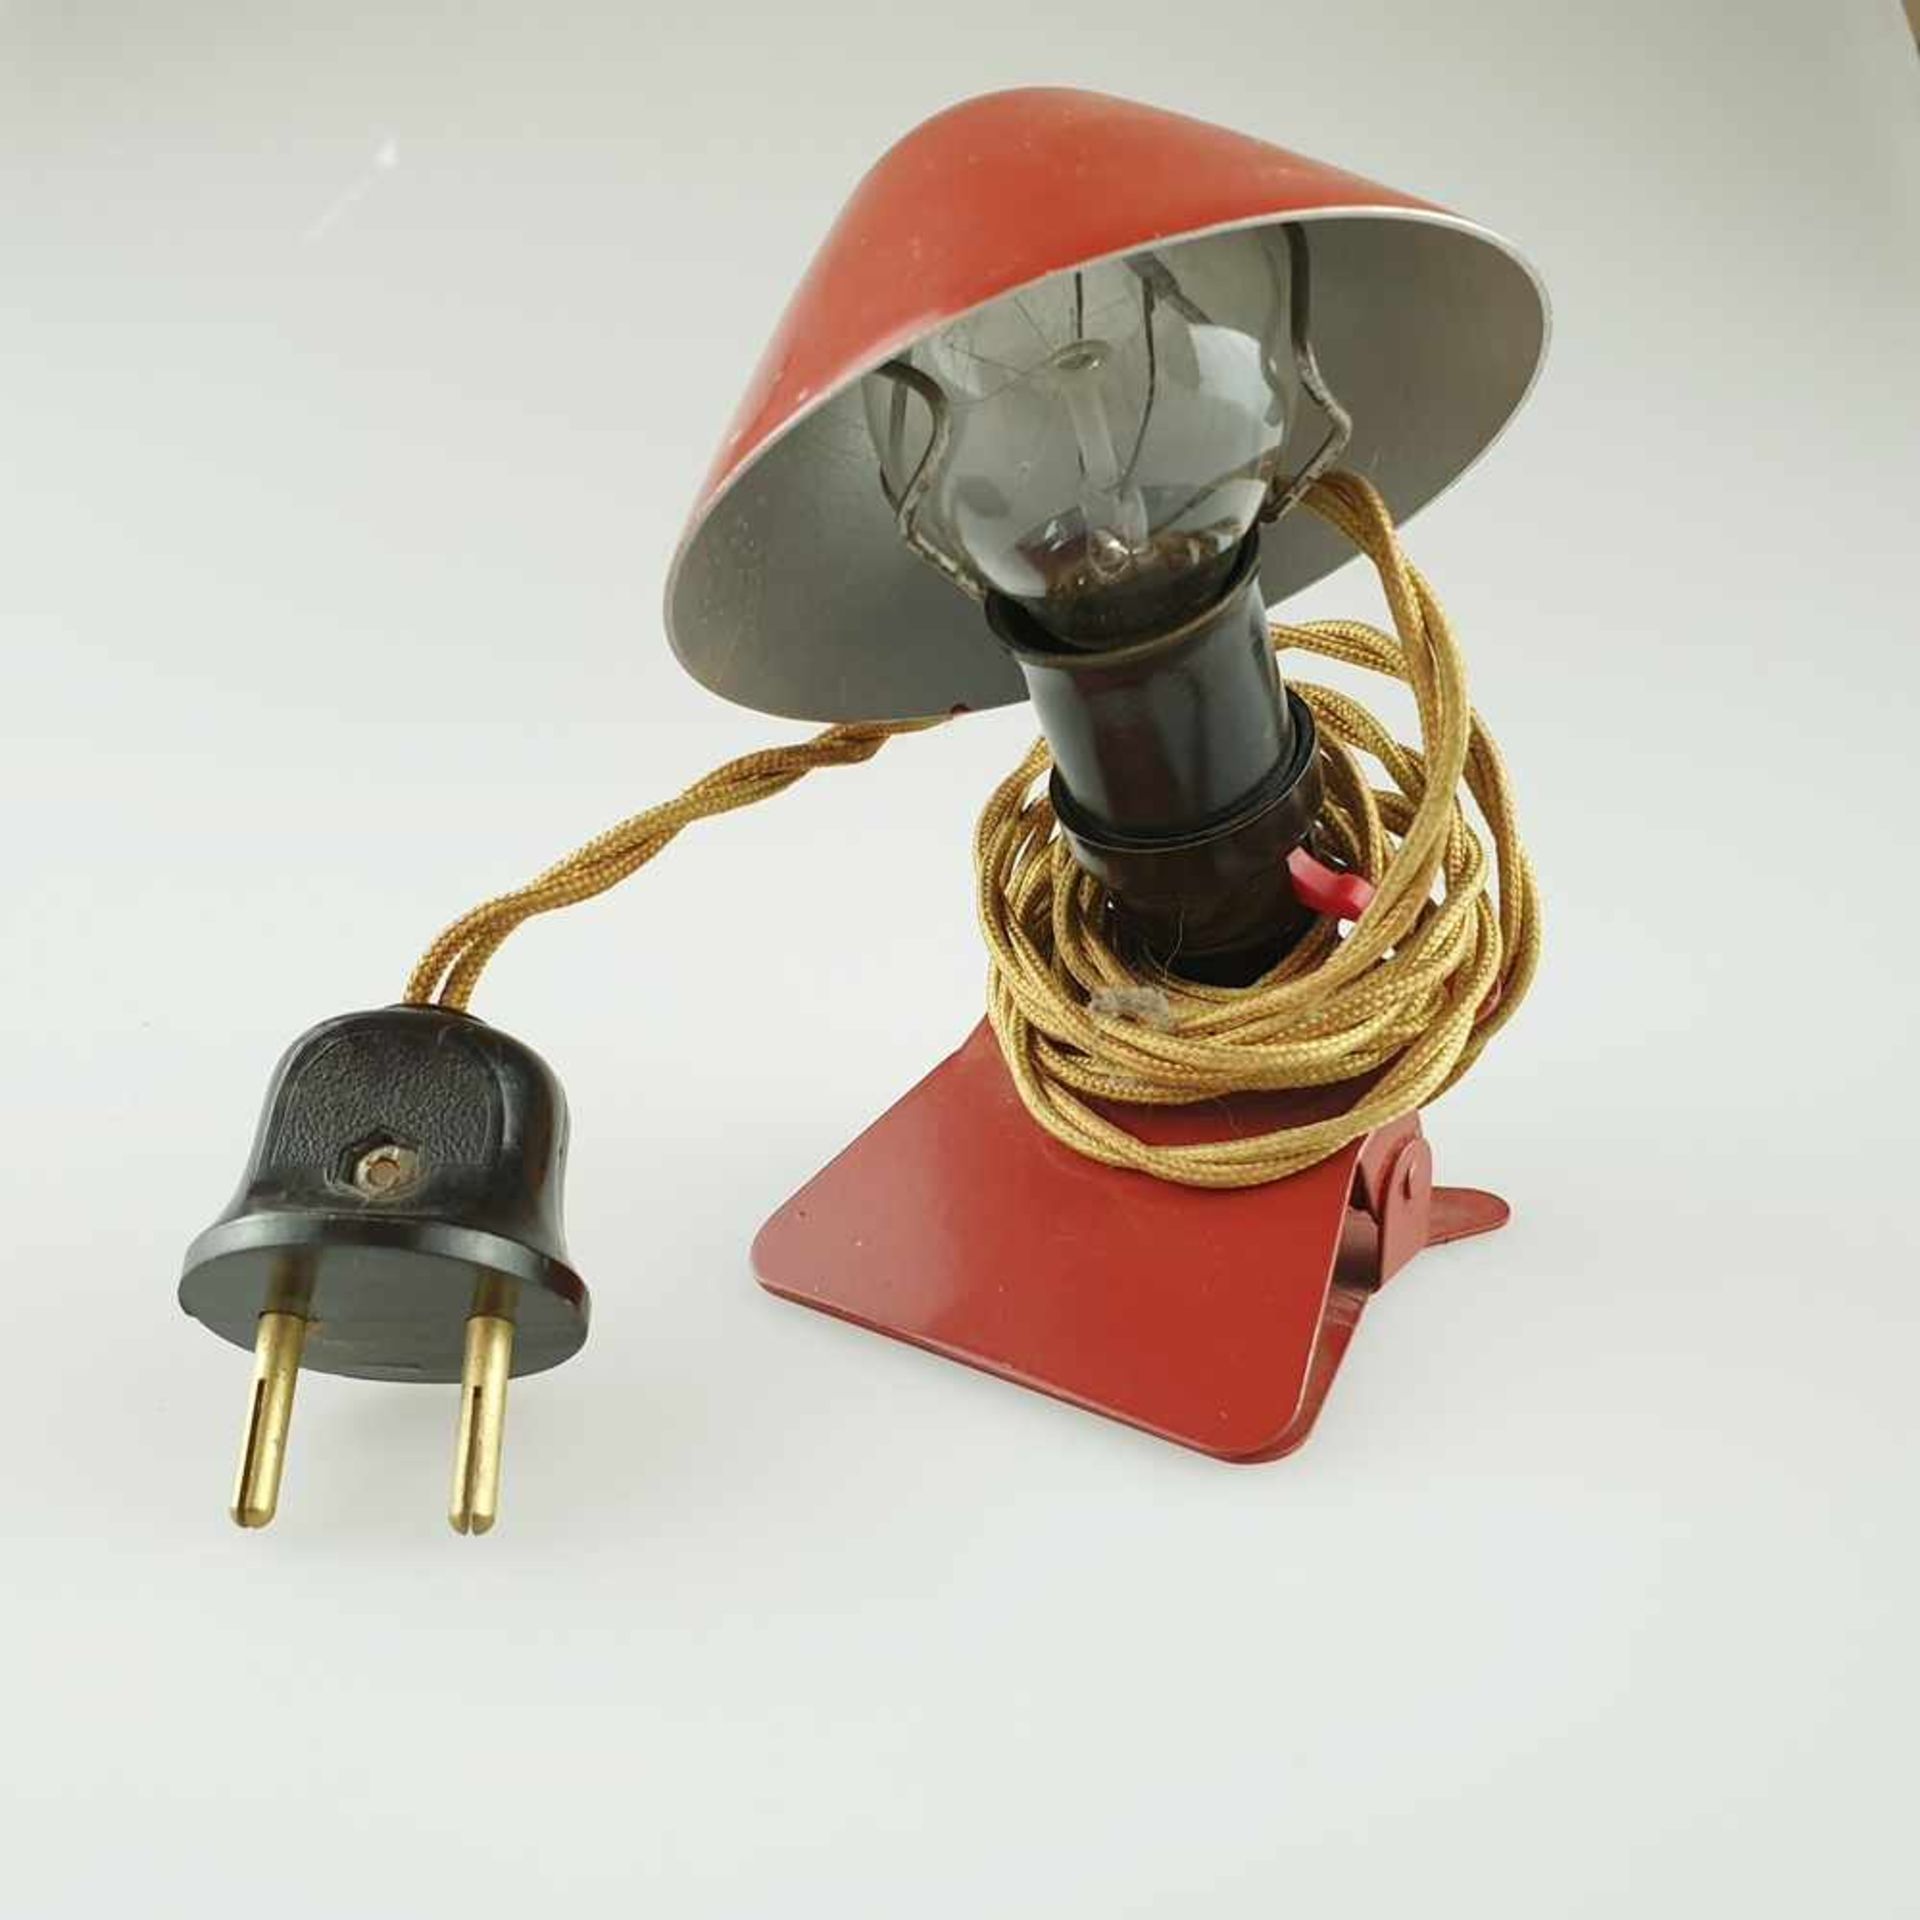 Klemmlampe- Metallschirm, rot gefasst,1-flammig elektrifiziert, Entwurf wohl Marianne Brandt,